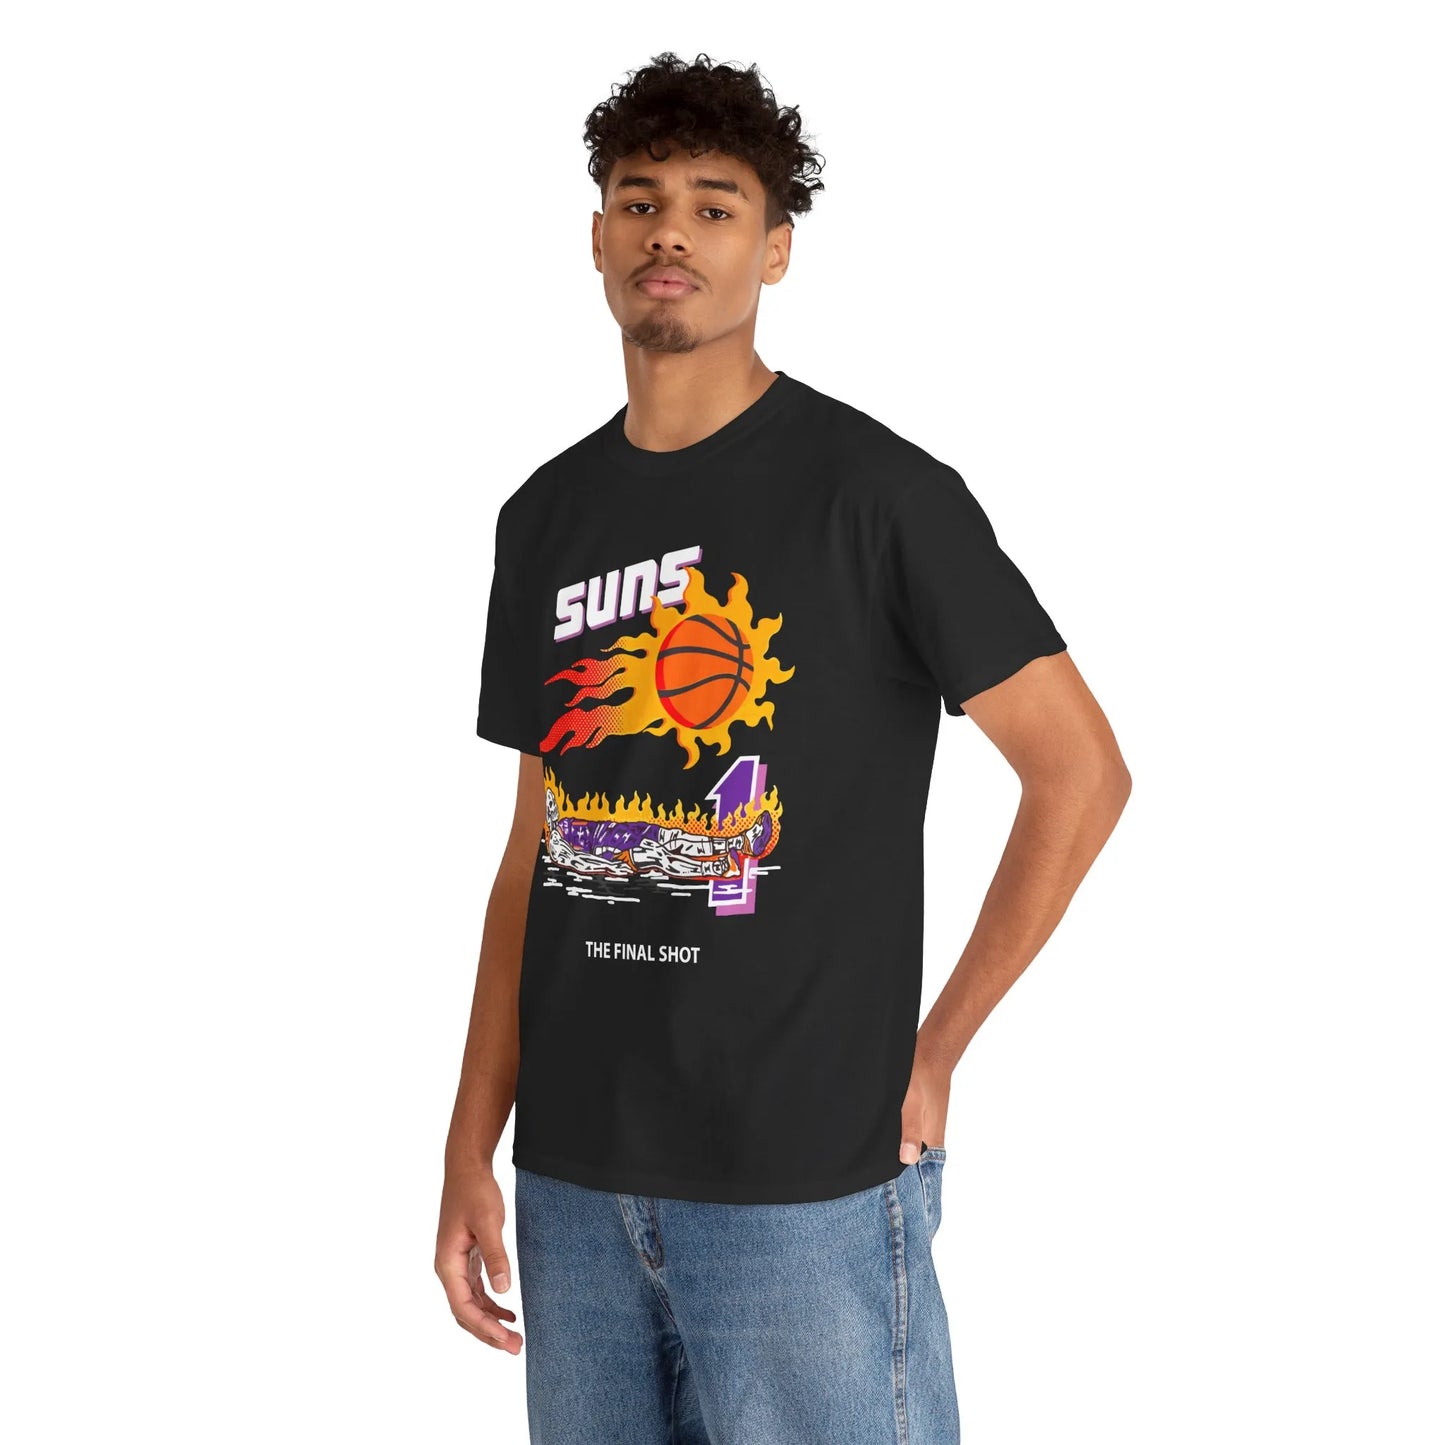 Suns The Final Shot Shirt, Phoenix Suns Shirt